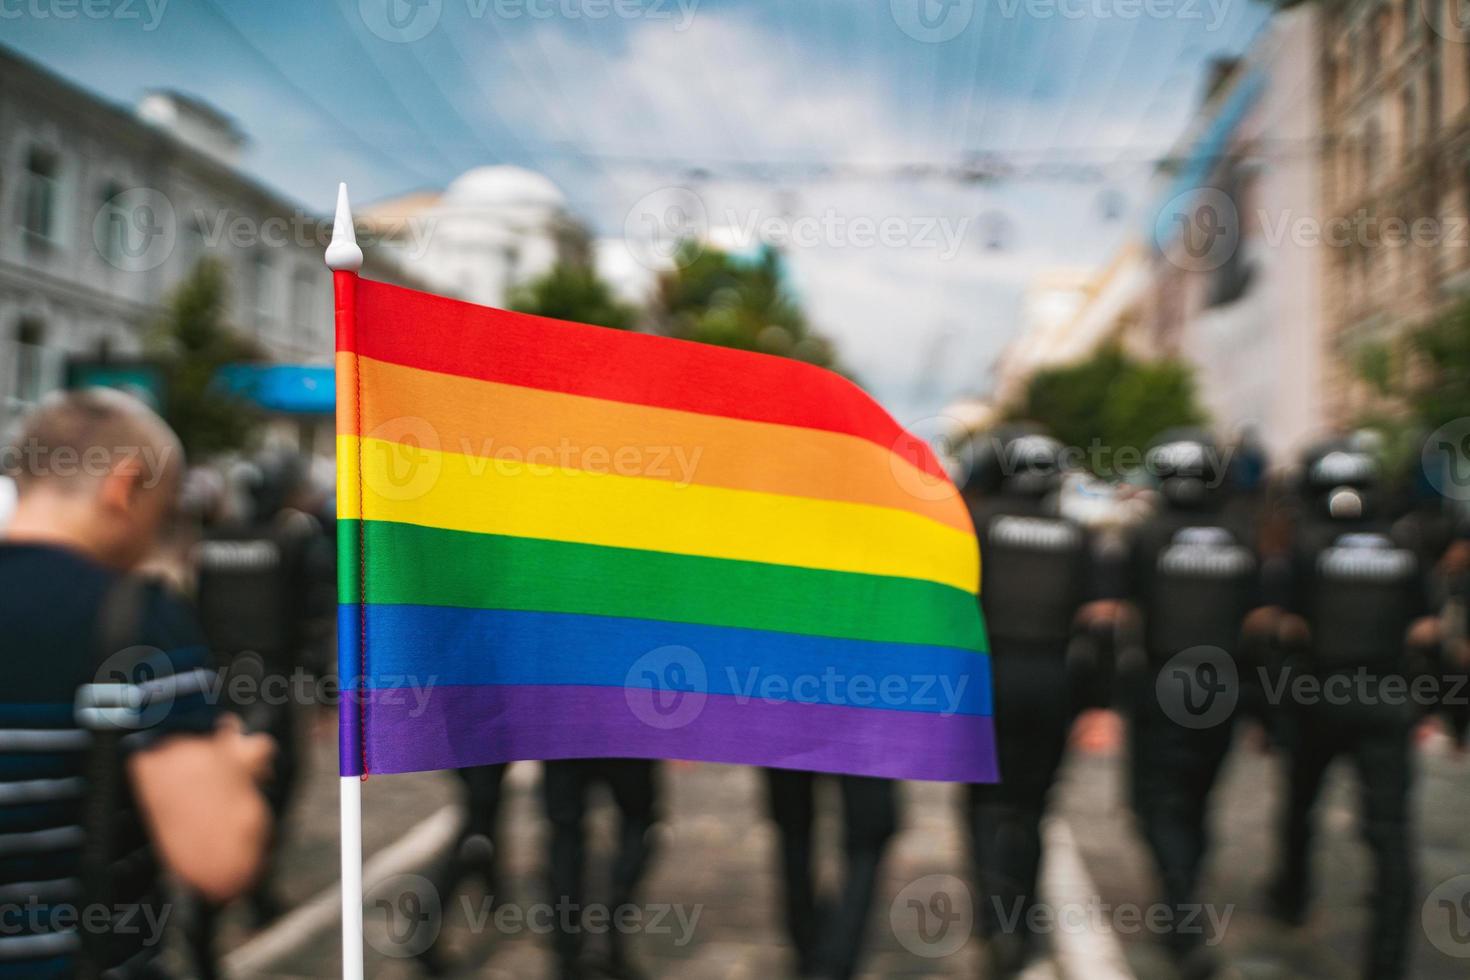 Hand hold a gay lgbt flag at LGBT gay pride parade festival photo